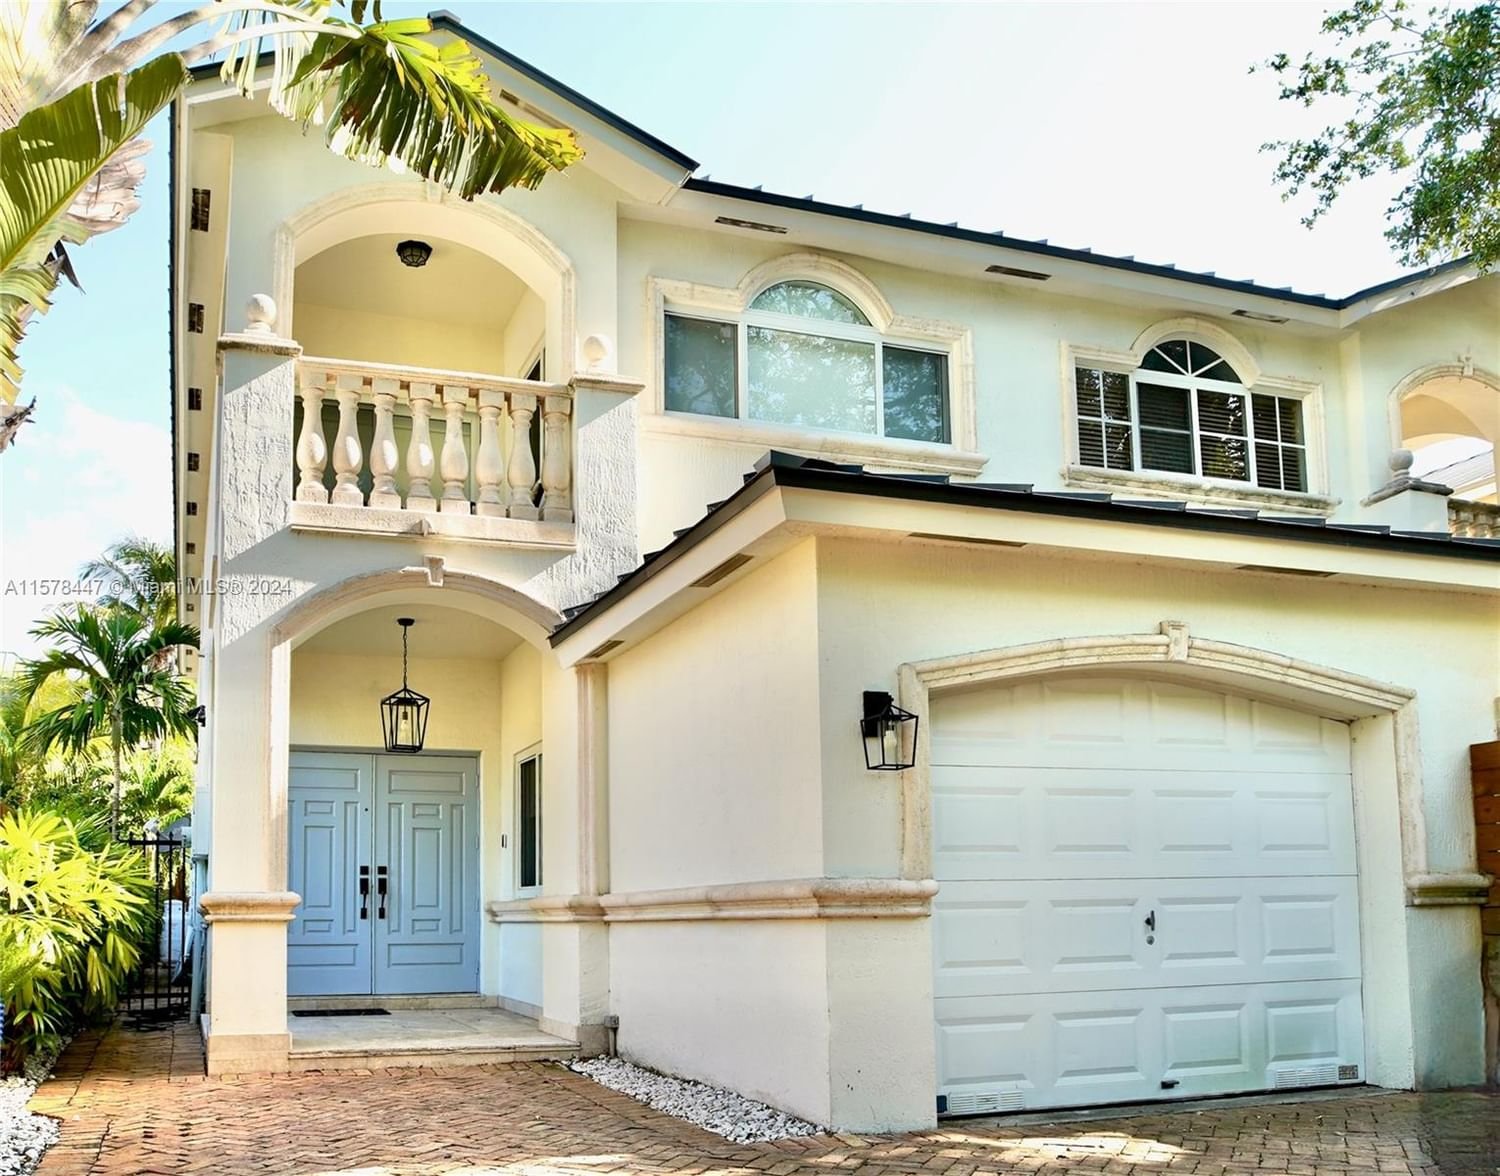 Real estate property located at 3053 Day Ave #4, Miami-Dade County, ORANGE POUNDS CONDO, Miami, FL